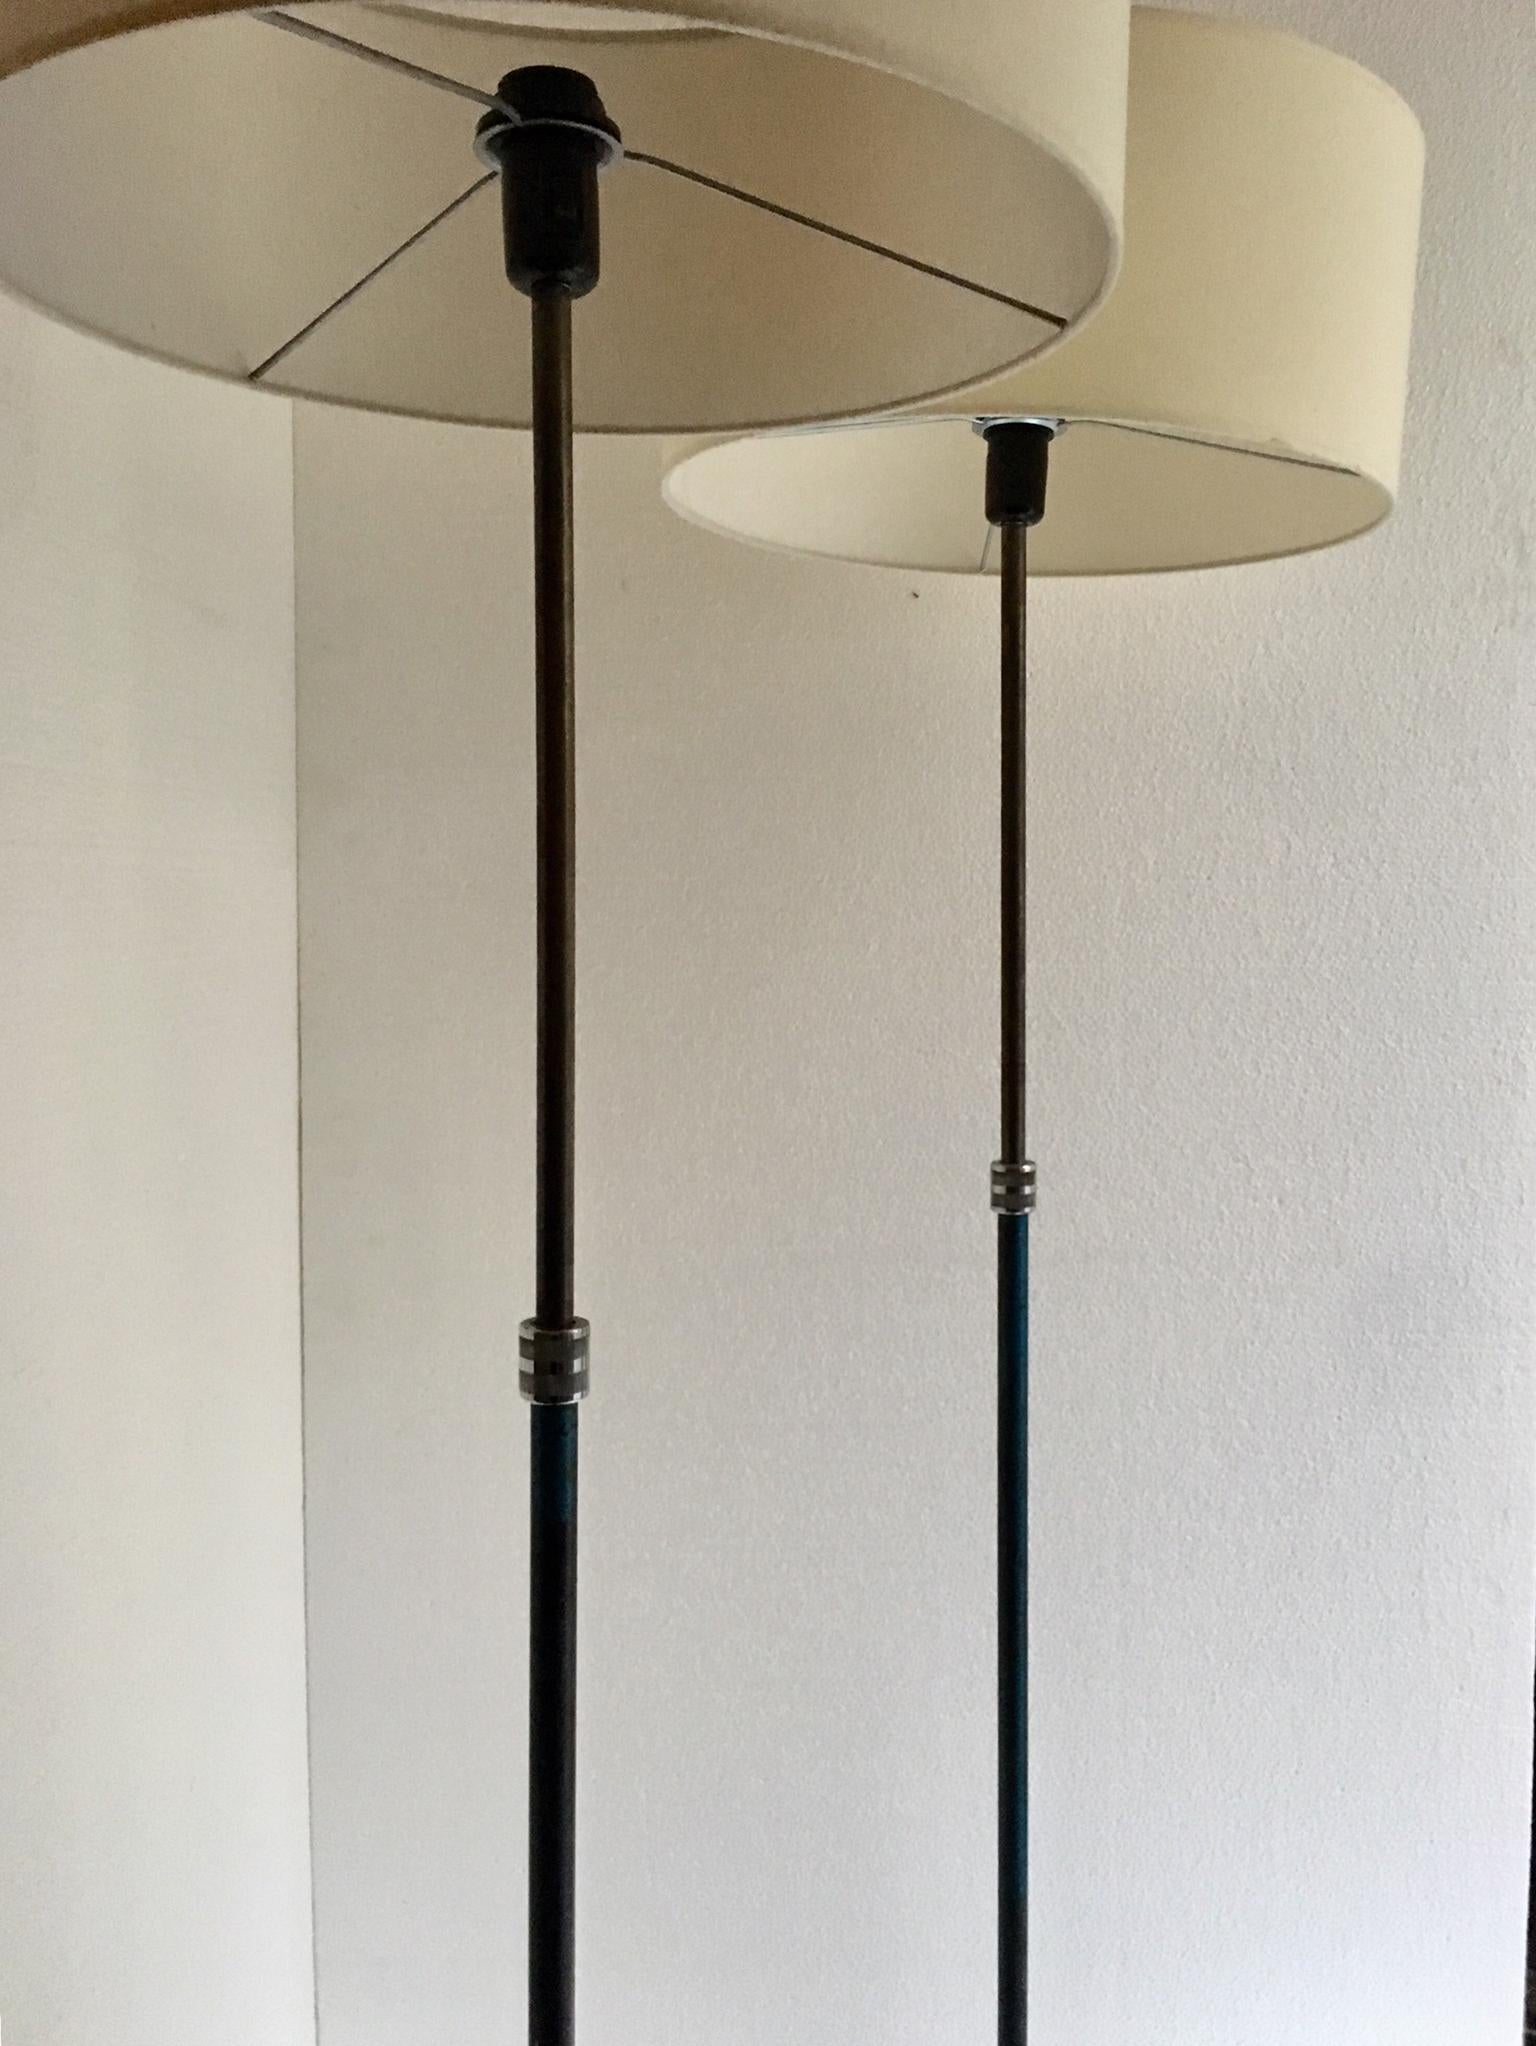 Vintage Industrie-Lampen, in Gusseisen und Chrom-Metall, die Basis ist ein Stativ mit Spuren von blauer Farbe, die Lampen sind einstellbar. Die gesamte Elektroinstallation wurde wiederhergestellt.